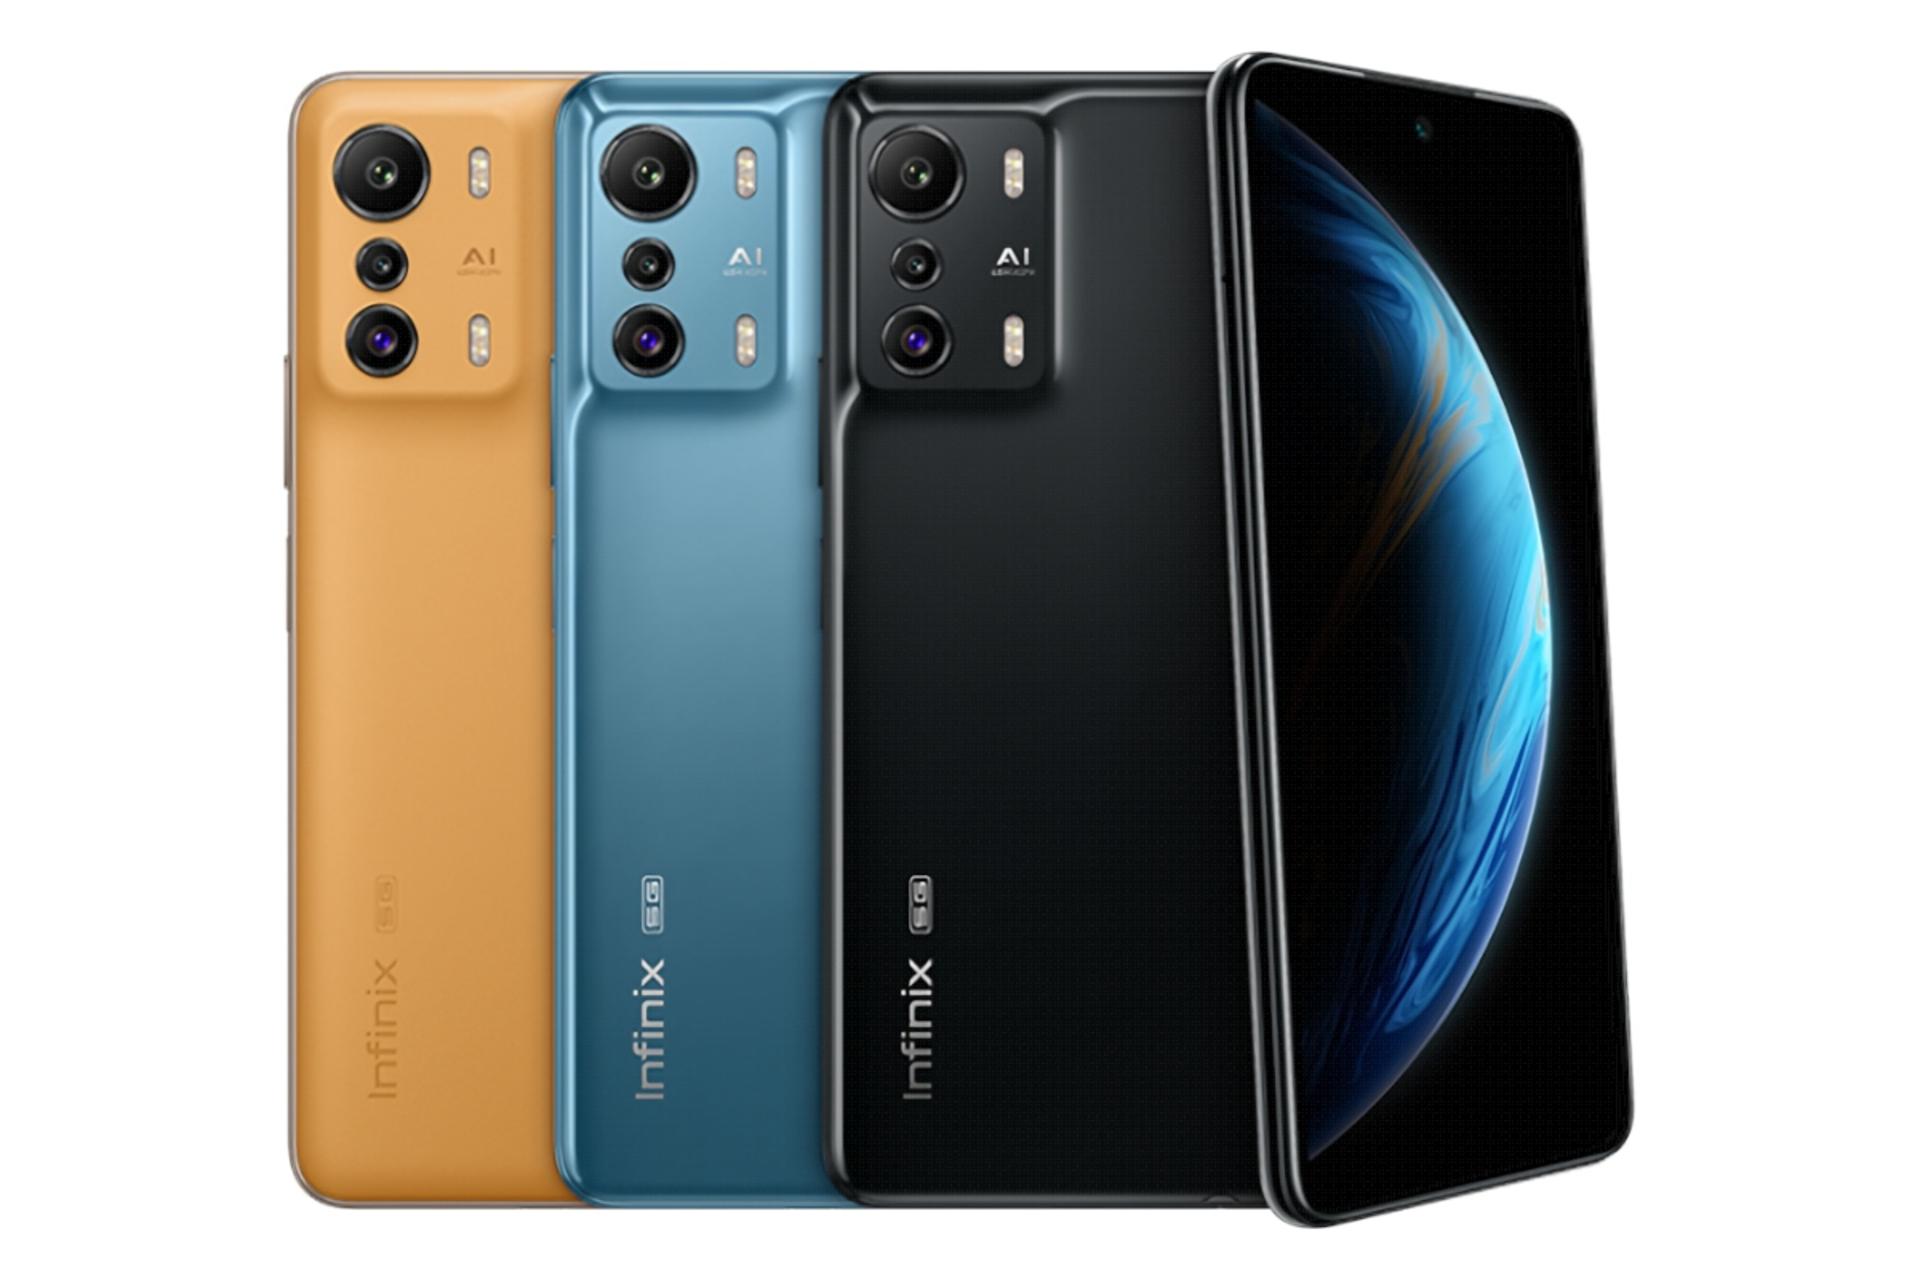 رنگ های مختلف Infinix Zero 5G / گوشی موبایل Zero اینفینیکس 5G